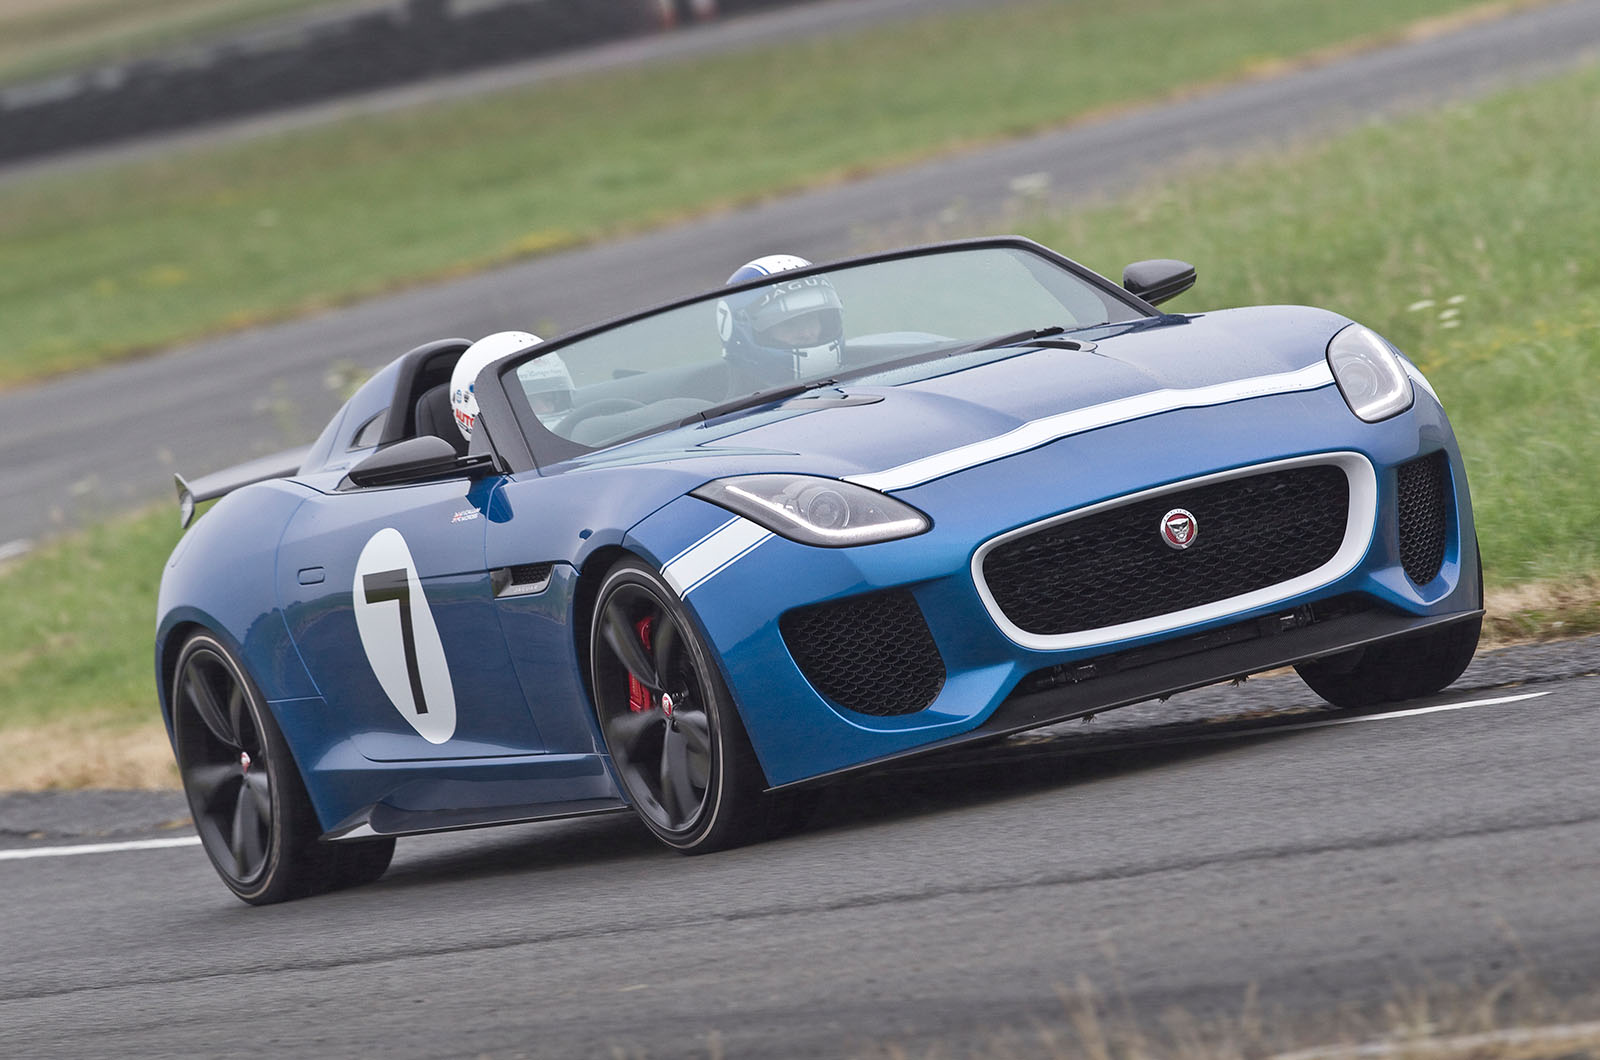 2013 Jaguar Project 7 Concept